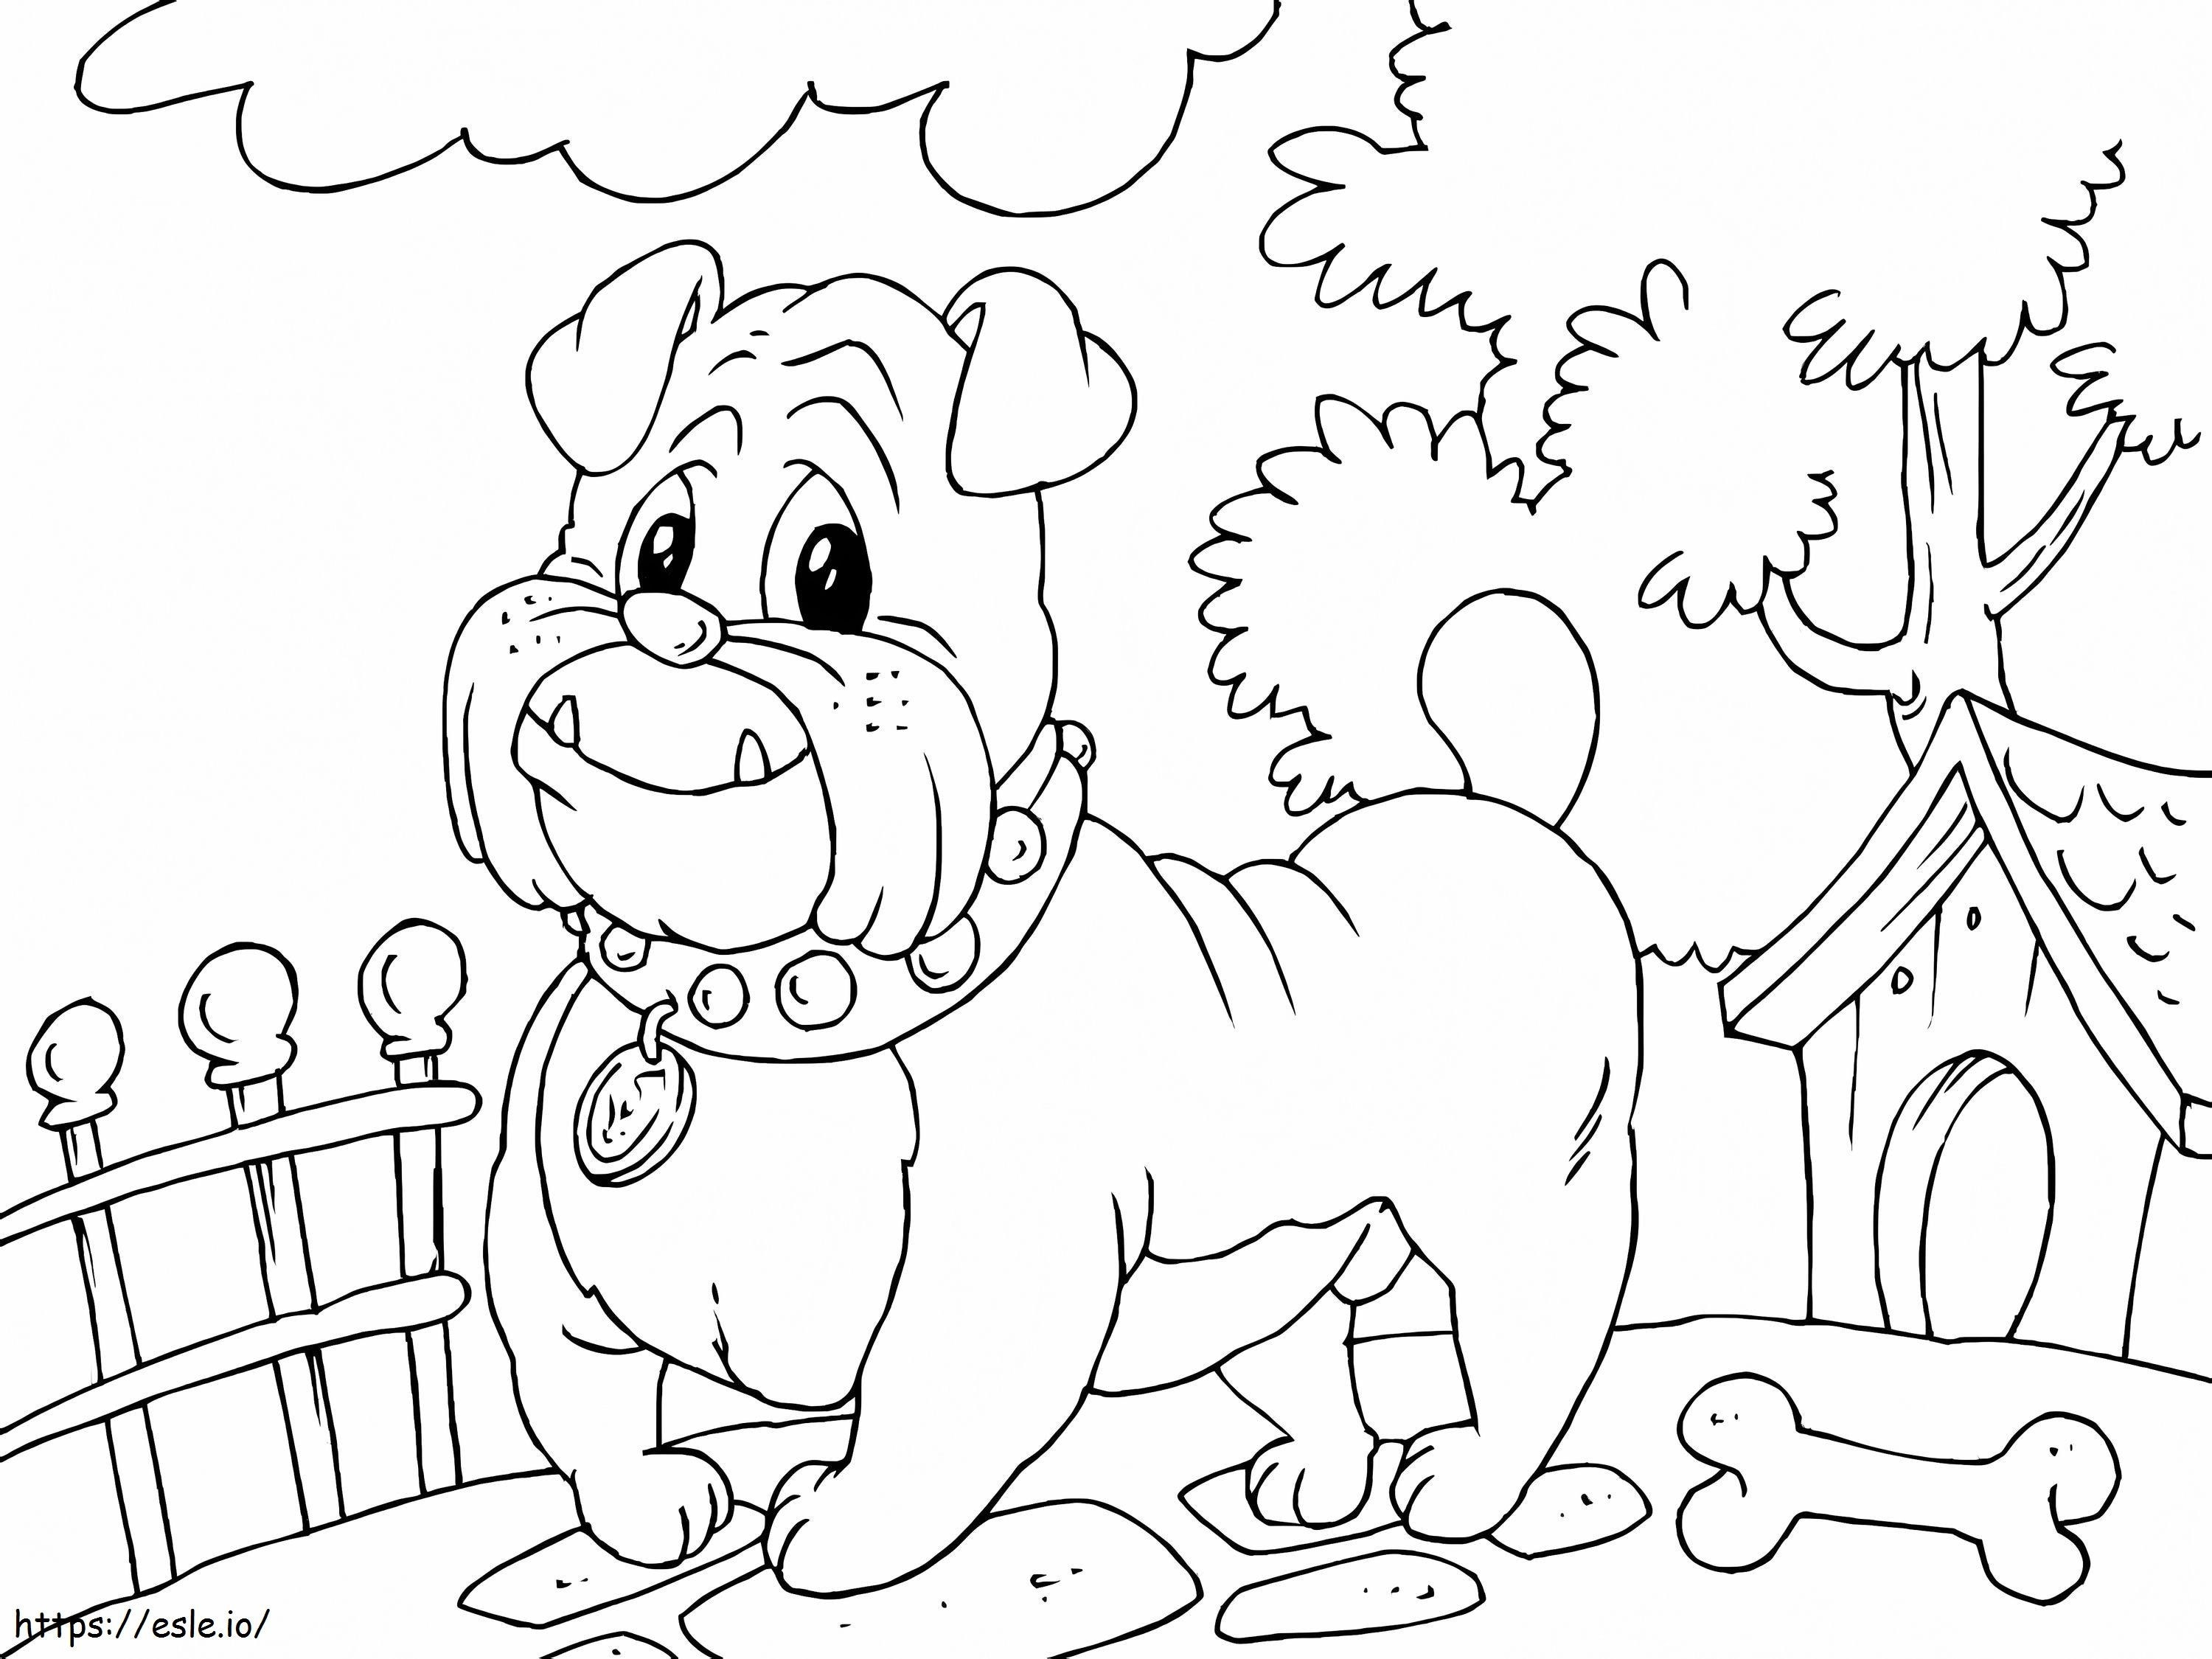 Cartoon Bulldog coloring page